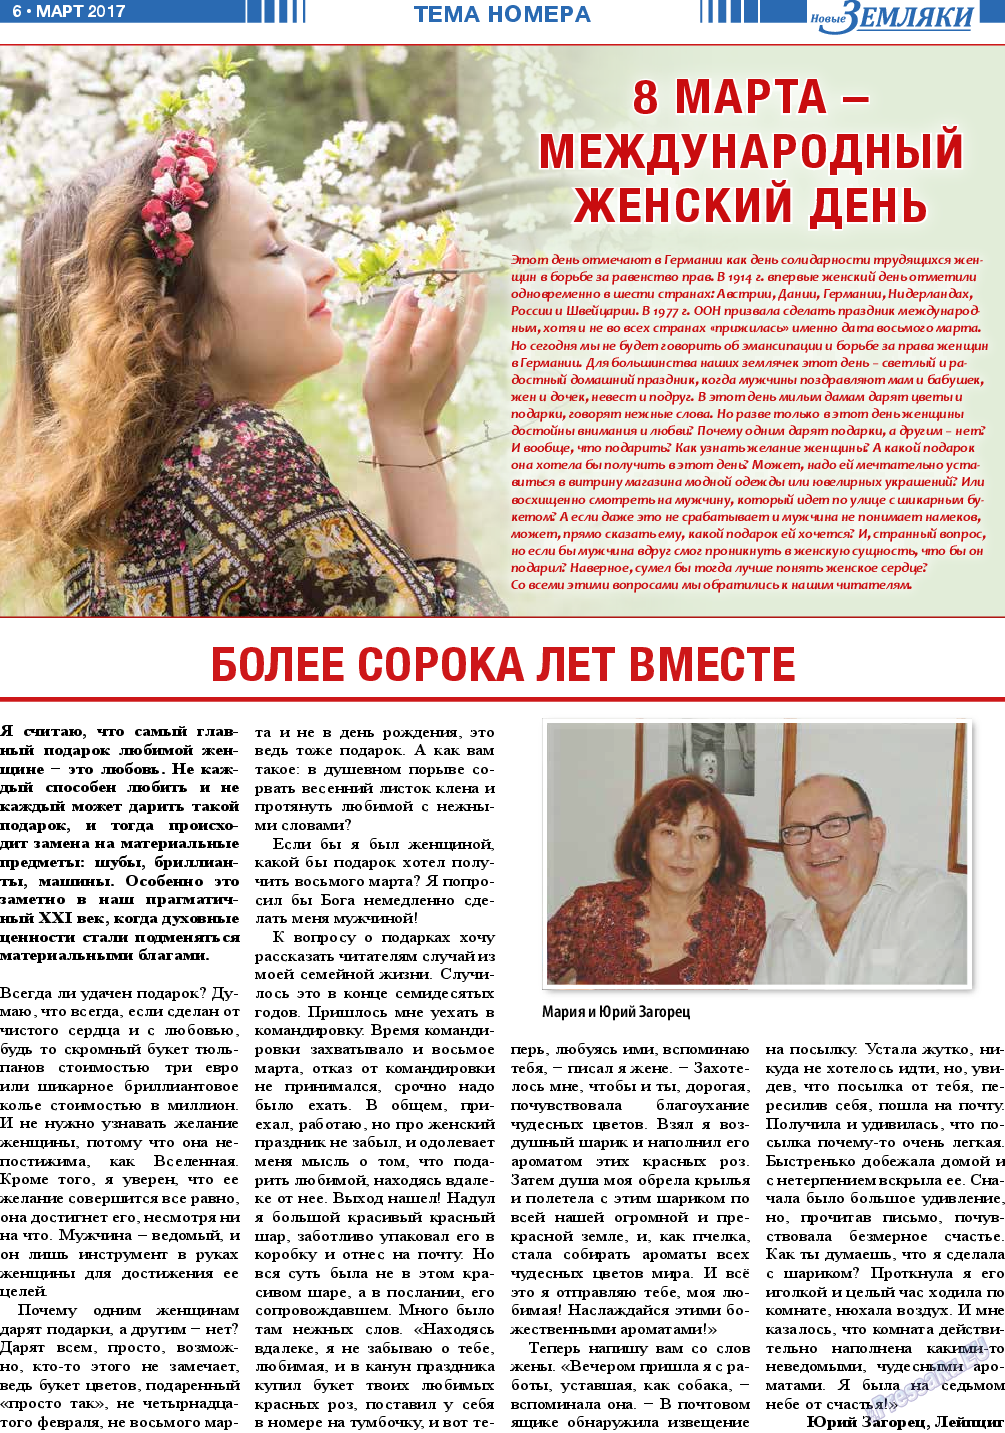 Новые Земляки, газета. 2017 №3 стр.6